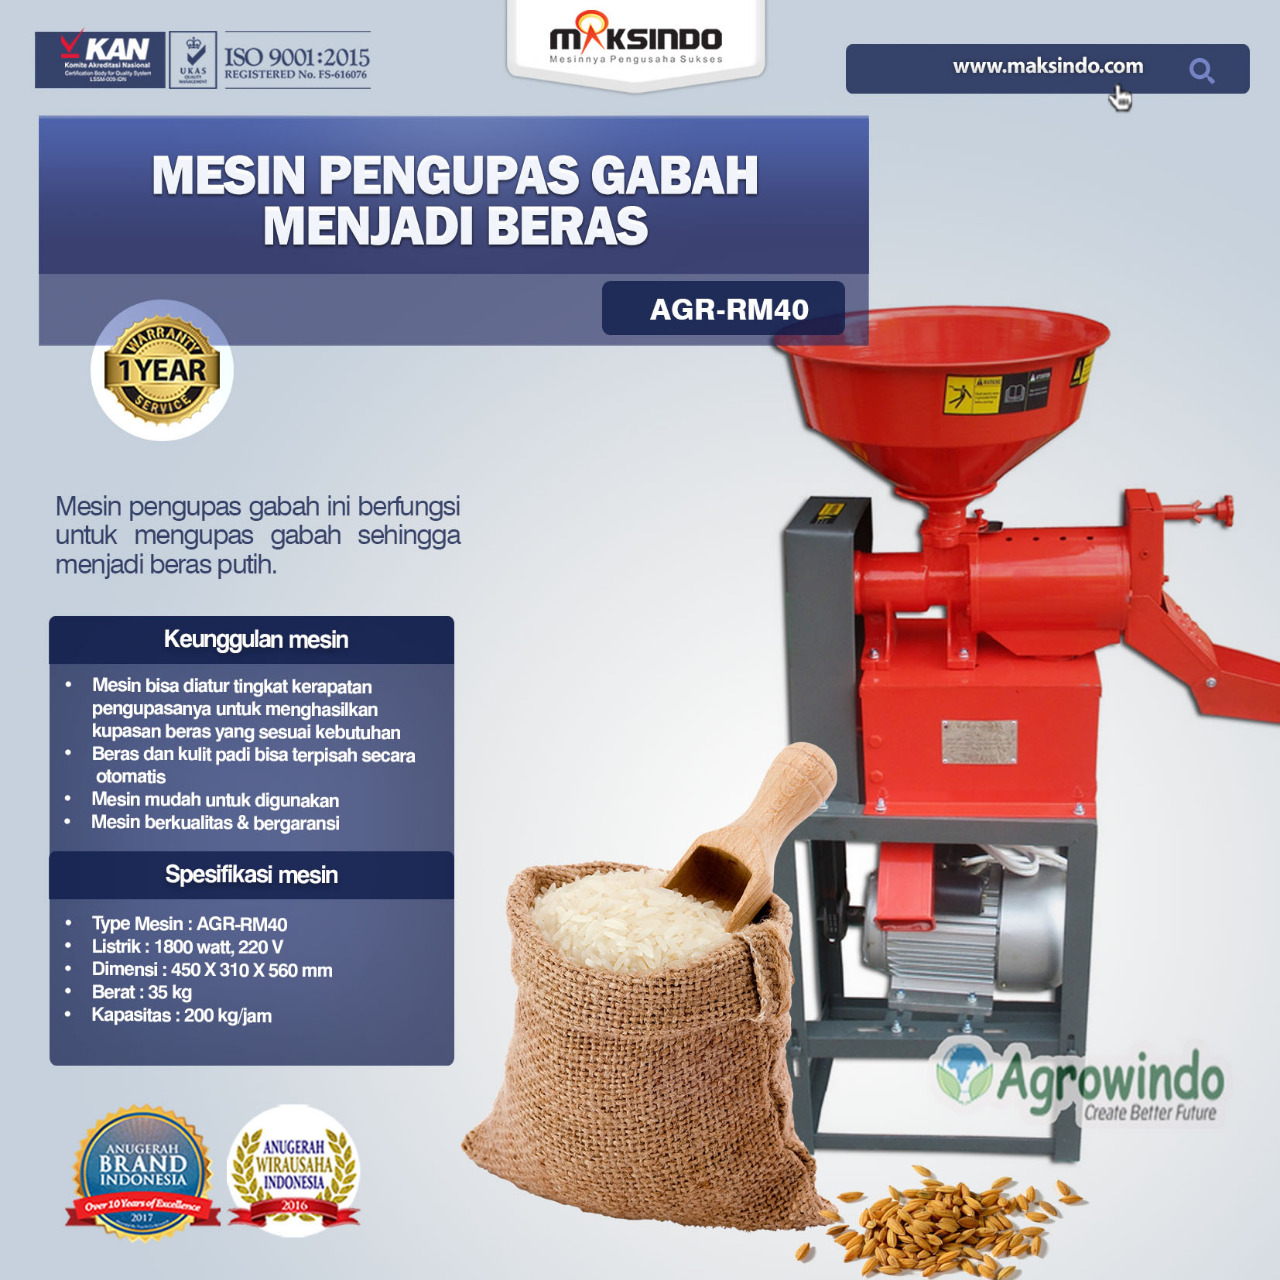 Jual Mesin Rice Huller Mini Pengupas Gabah – Beras AGR-RM40 di Blitar